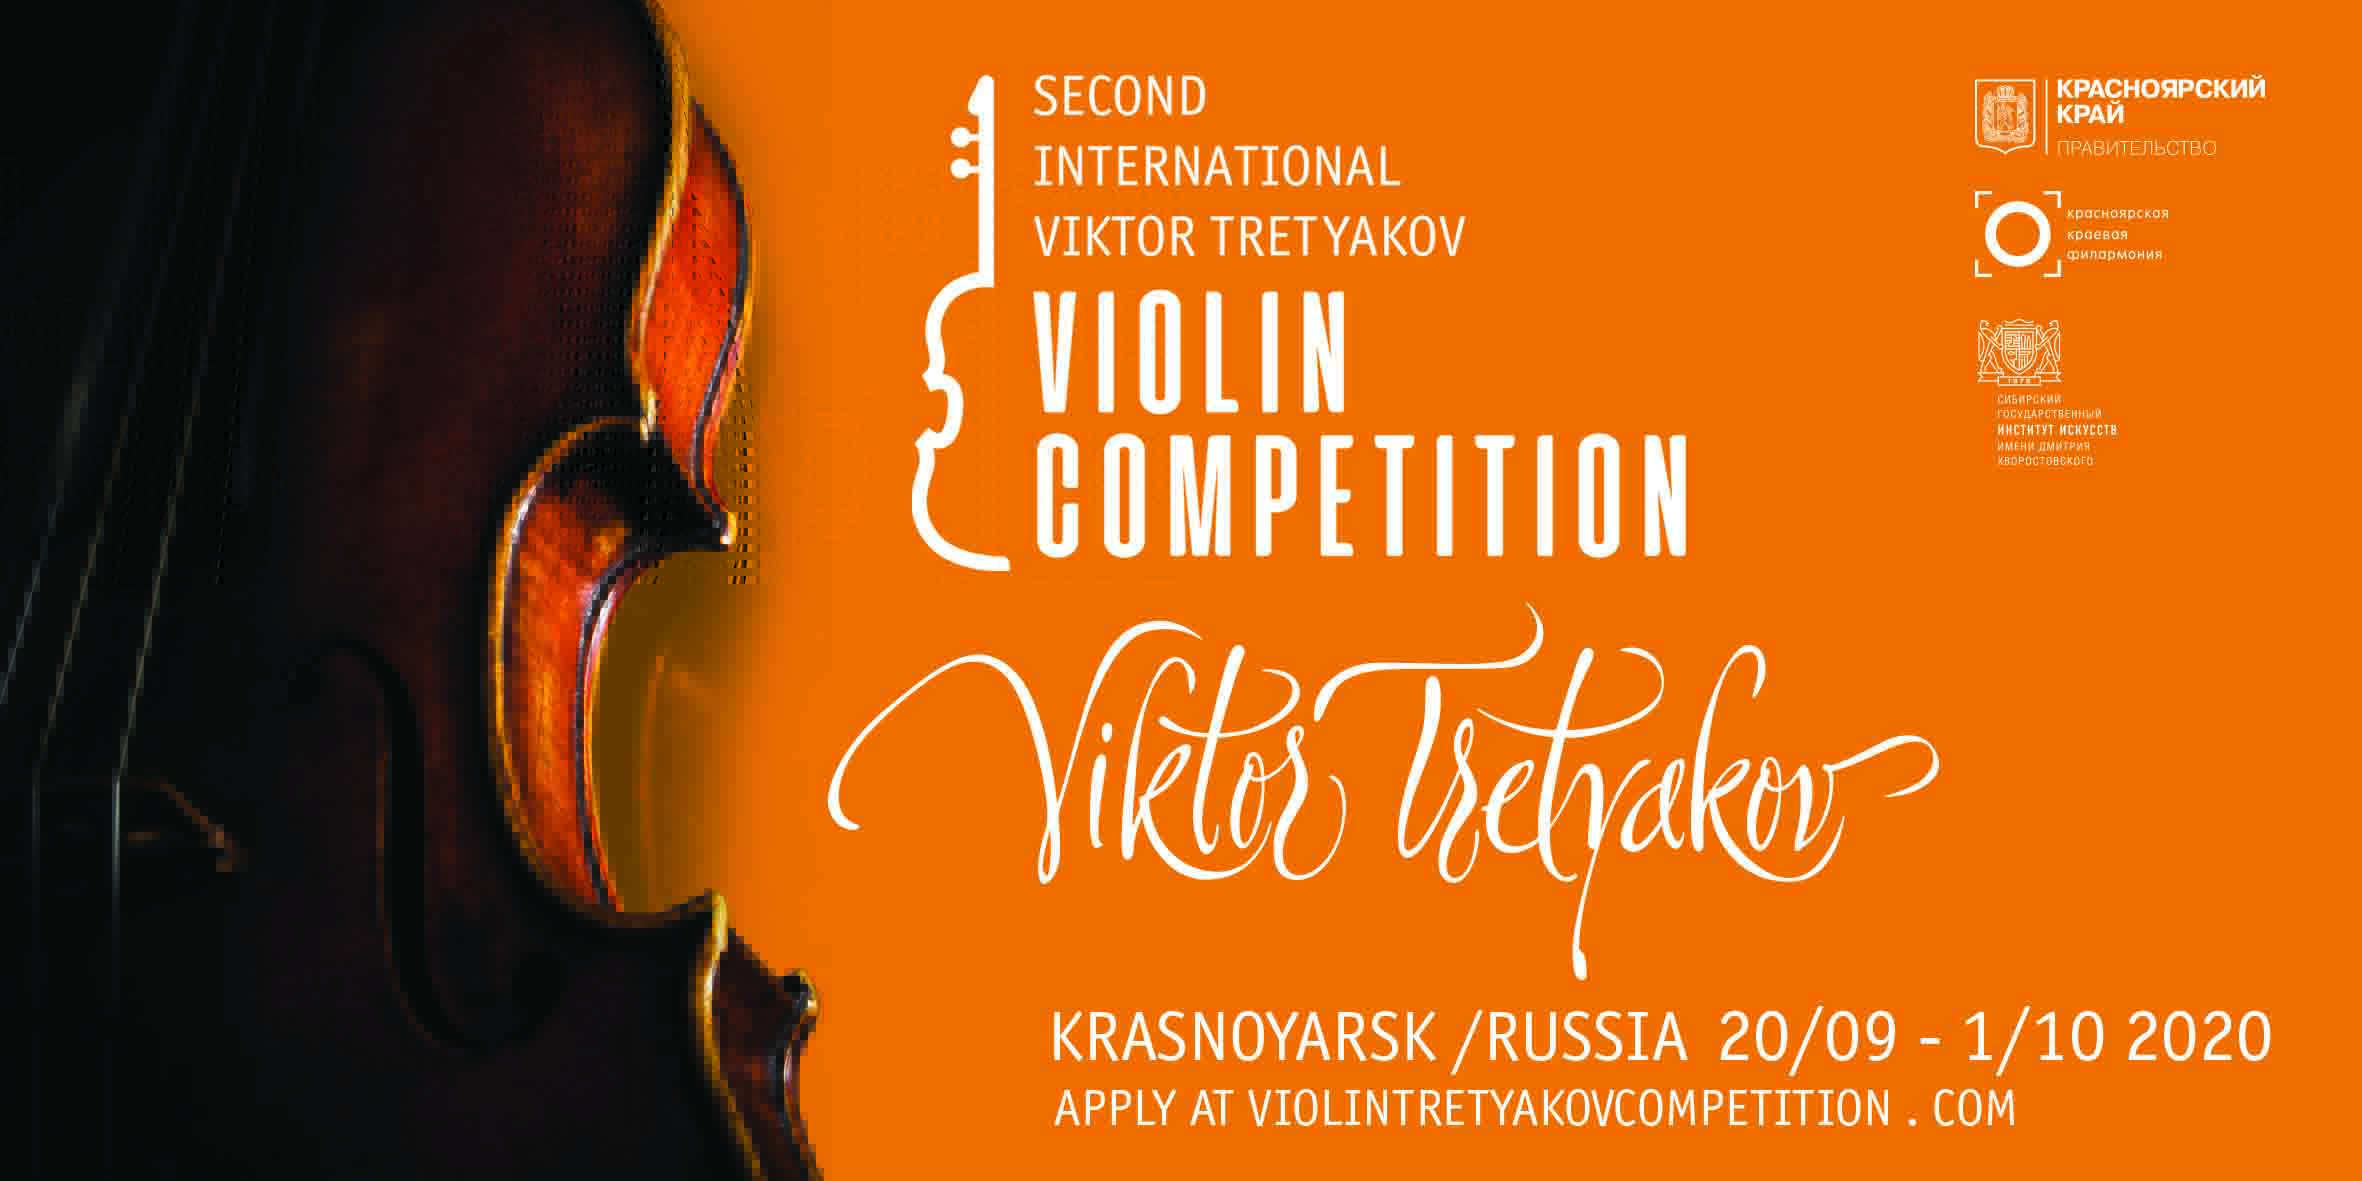 Стартовал приём заявок на участие во II Международном конкурсе скрипачей Виктора Третьякова в Красноярске